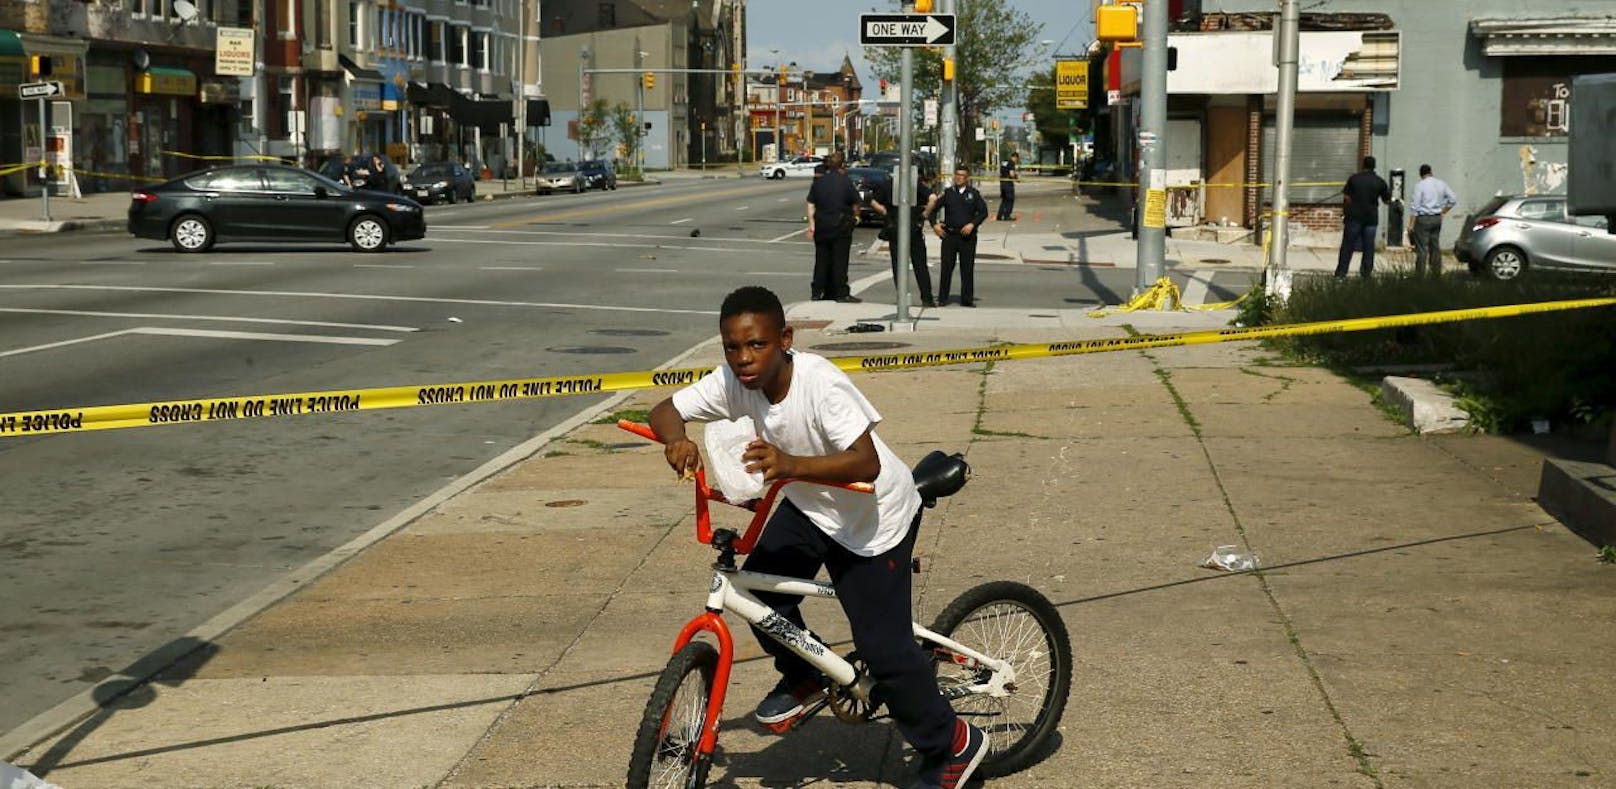 Polizeiabsperrung, Mordschauplatz: Kein seltener Anblick in Baltimore